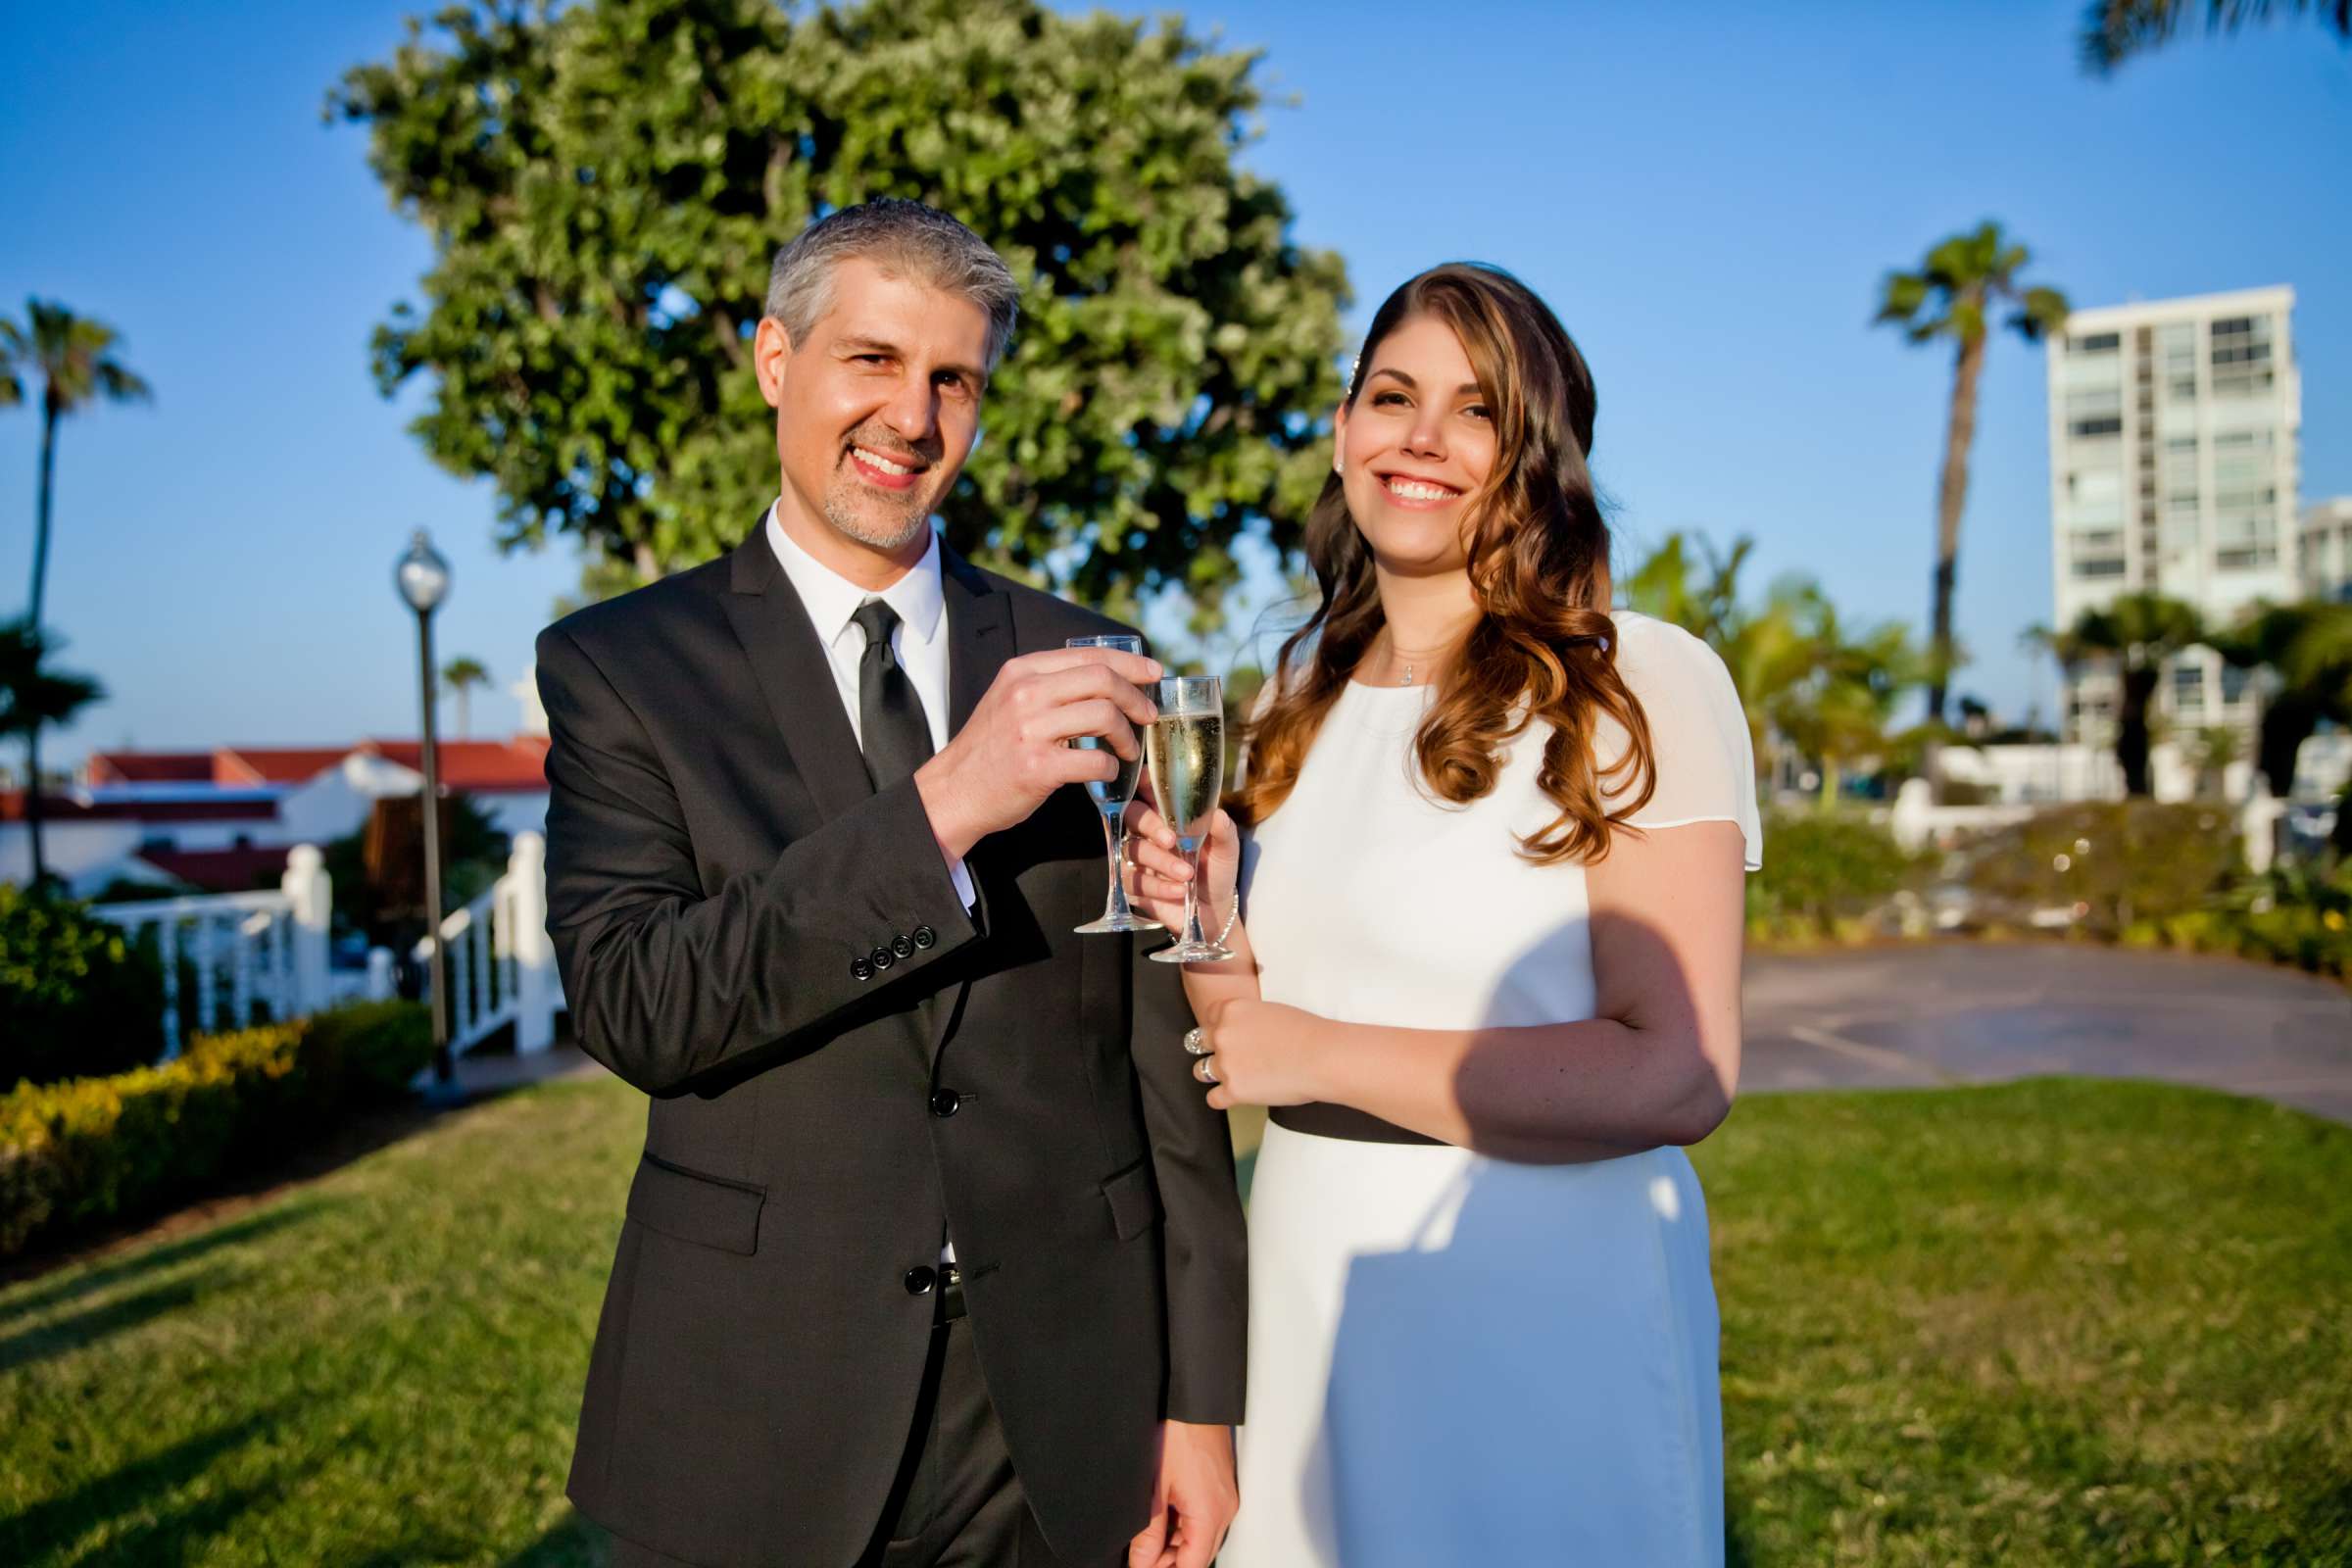 Hotel Del Coronado Wedding, Melis and Marc Wedding Photo #14 by True Photography